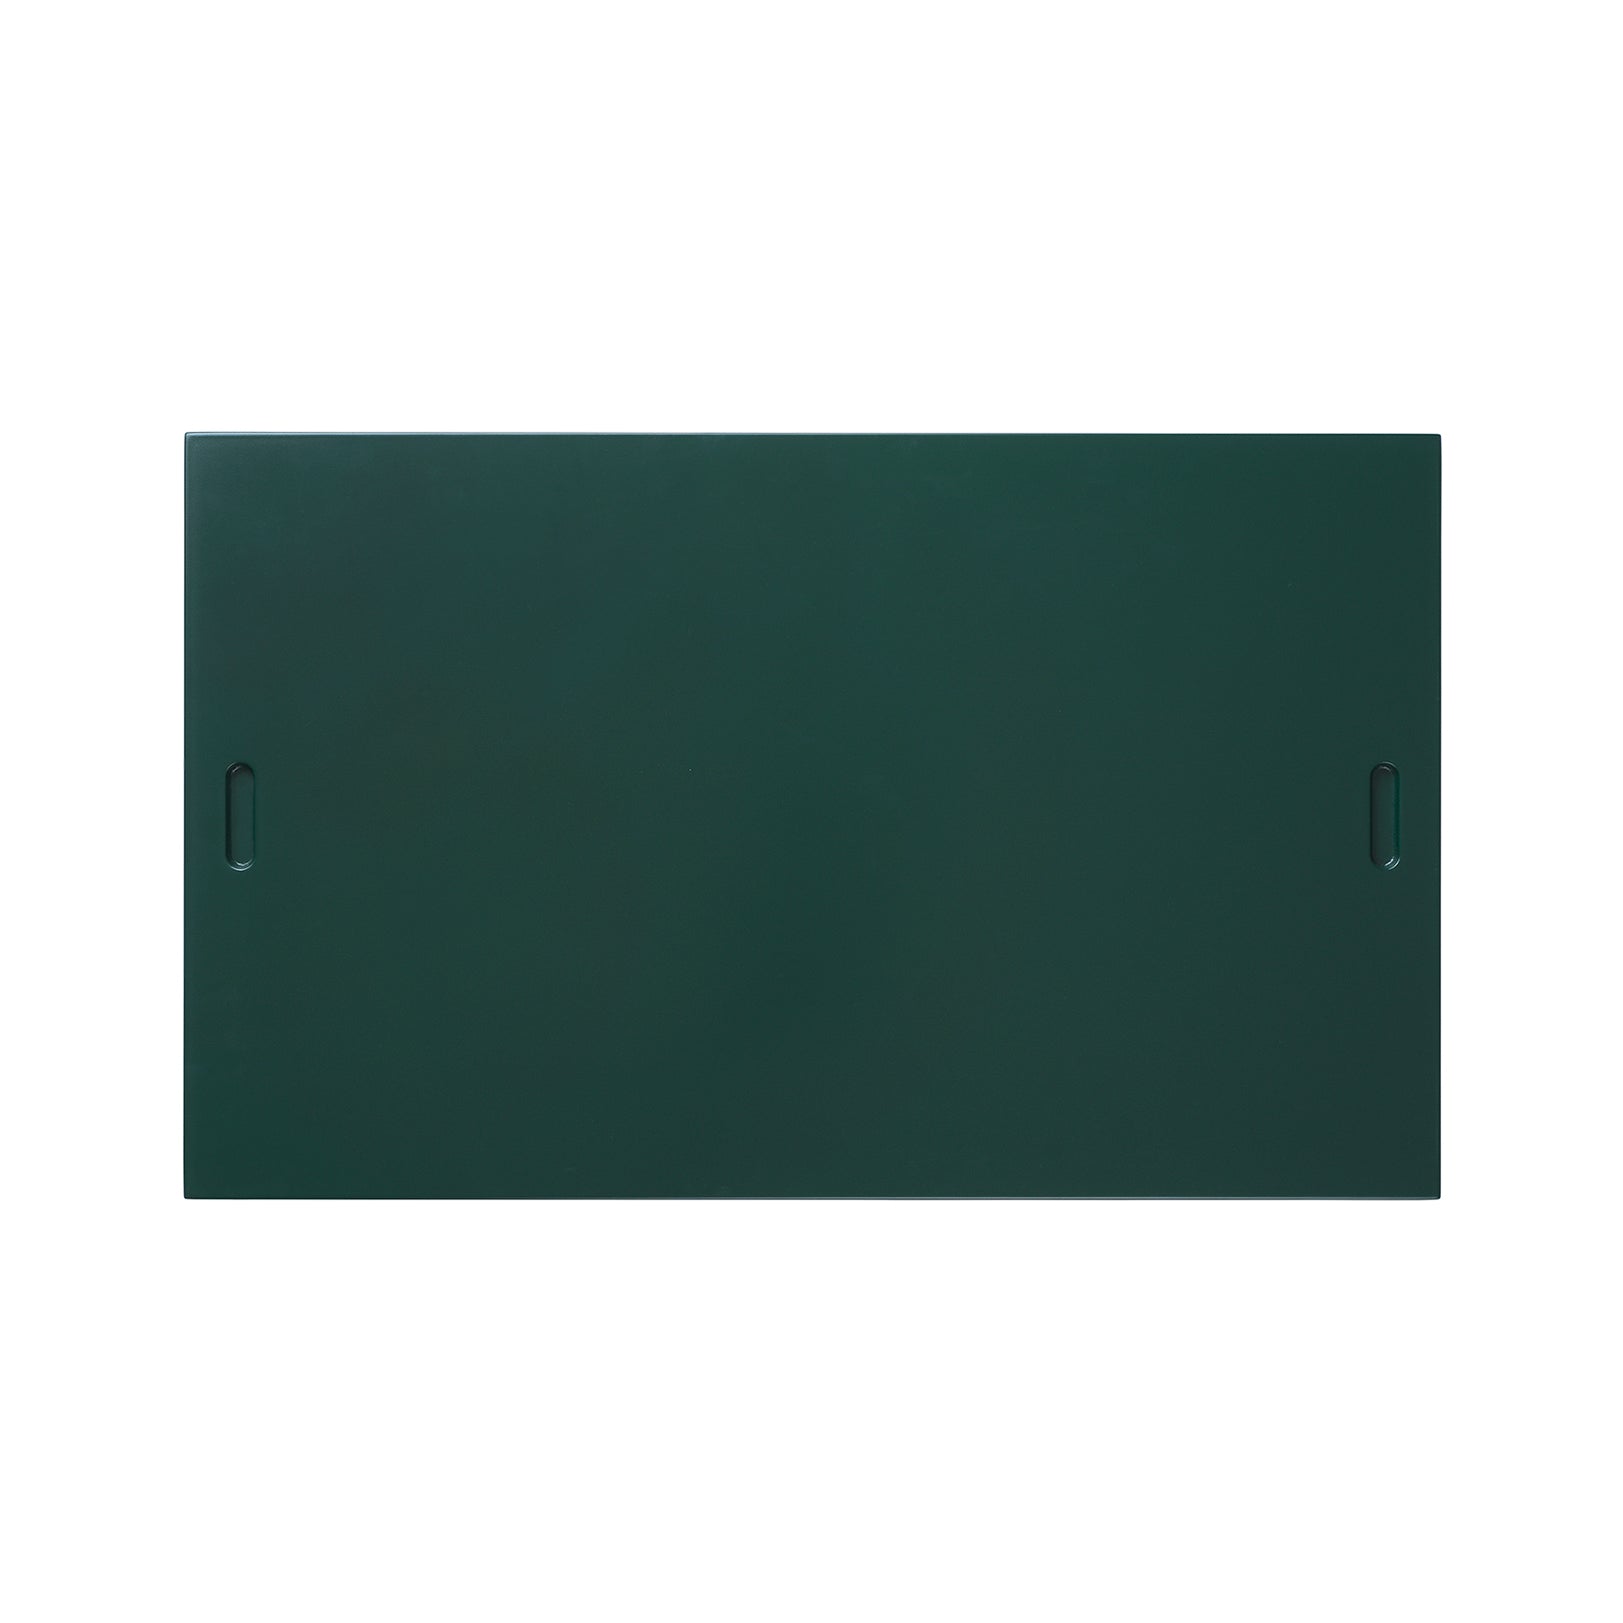 BM0253-5 Shelving System: Green